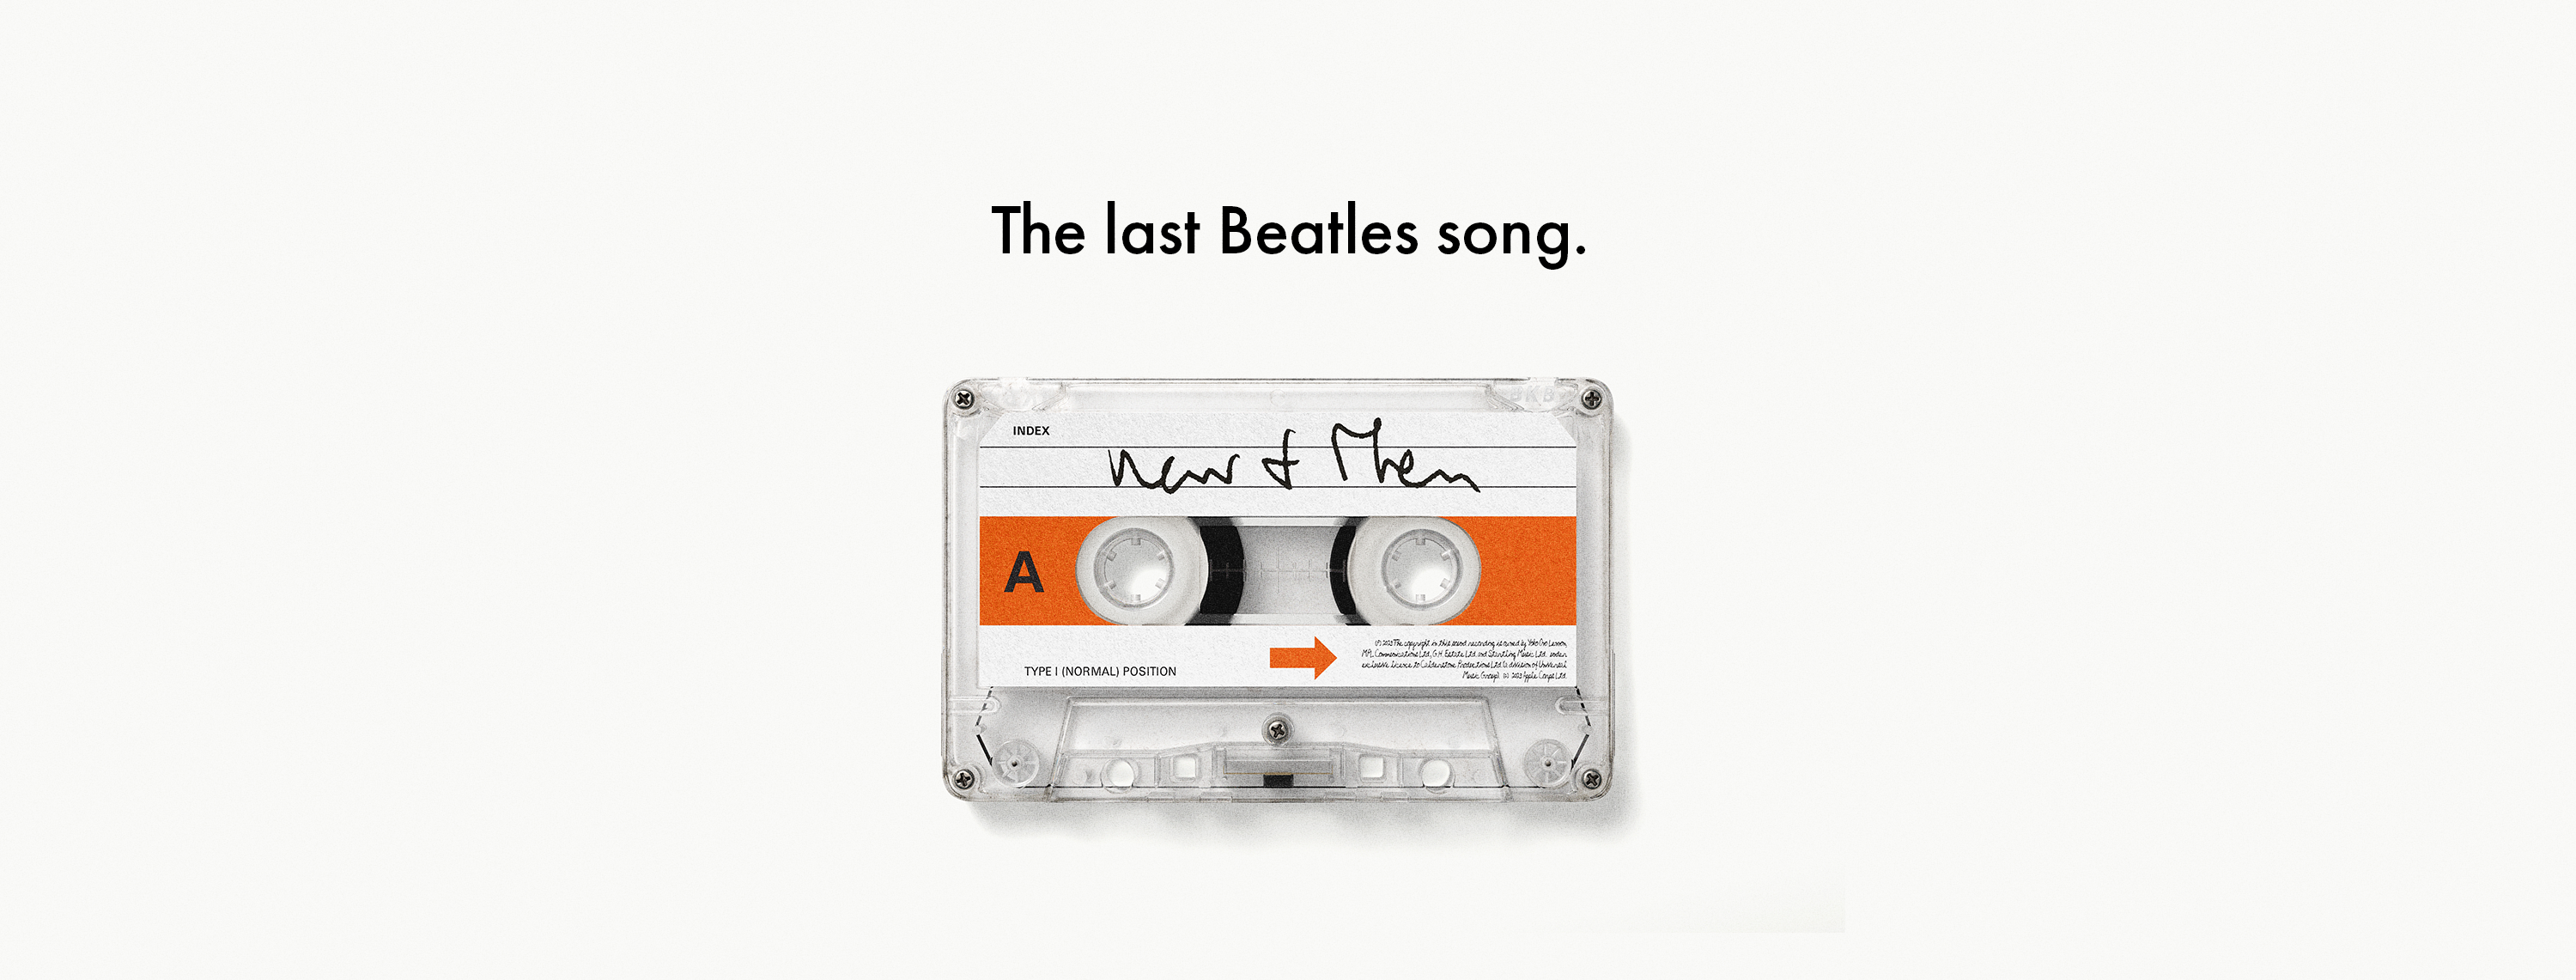 The Beatles Last Song. Fuente: Facebook